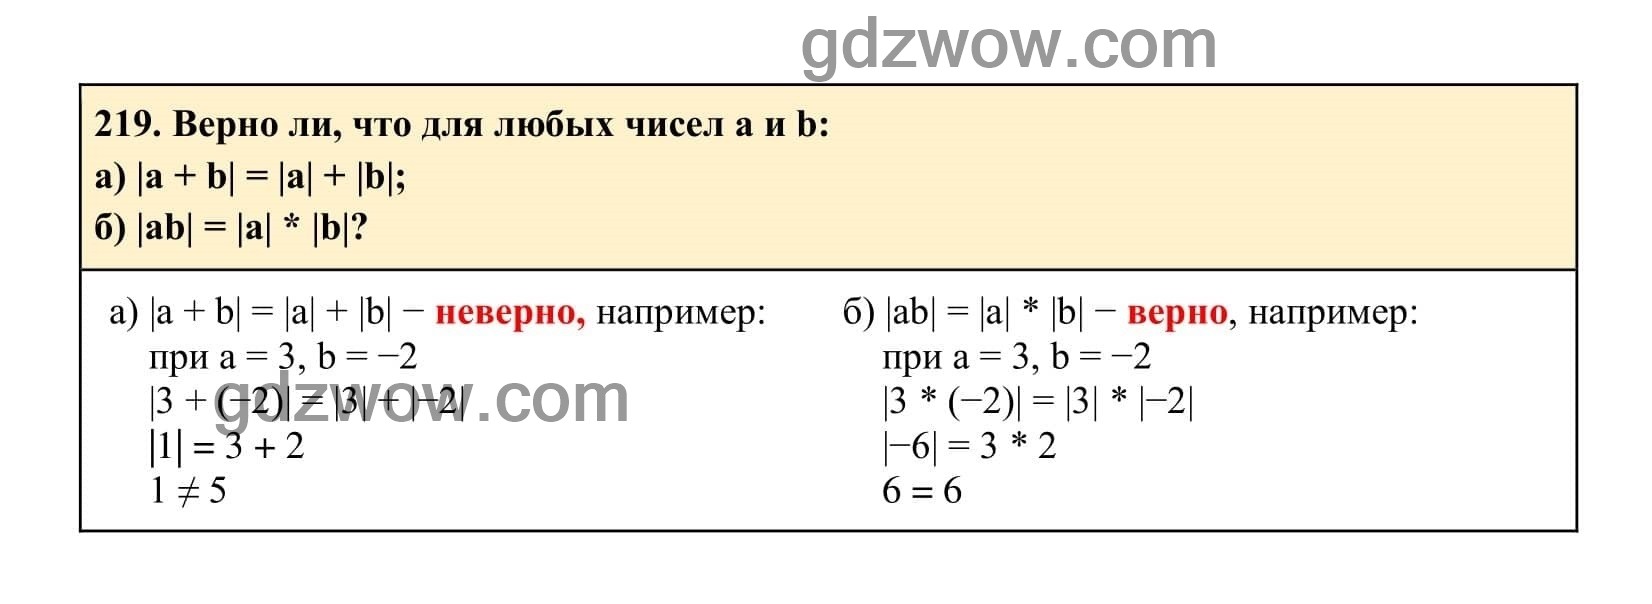 Упражнение 219 - ГДЗ по Алгебре 7 класс Учебник Макарычев (решебник) - GDZwow